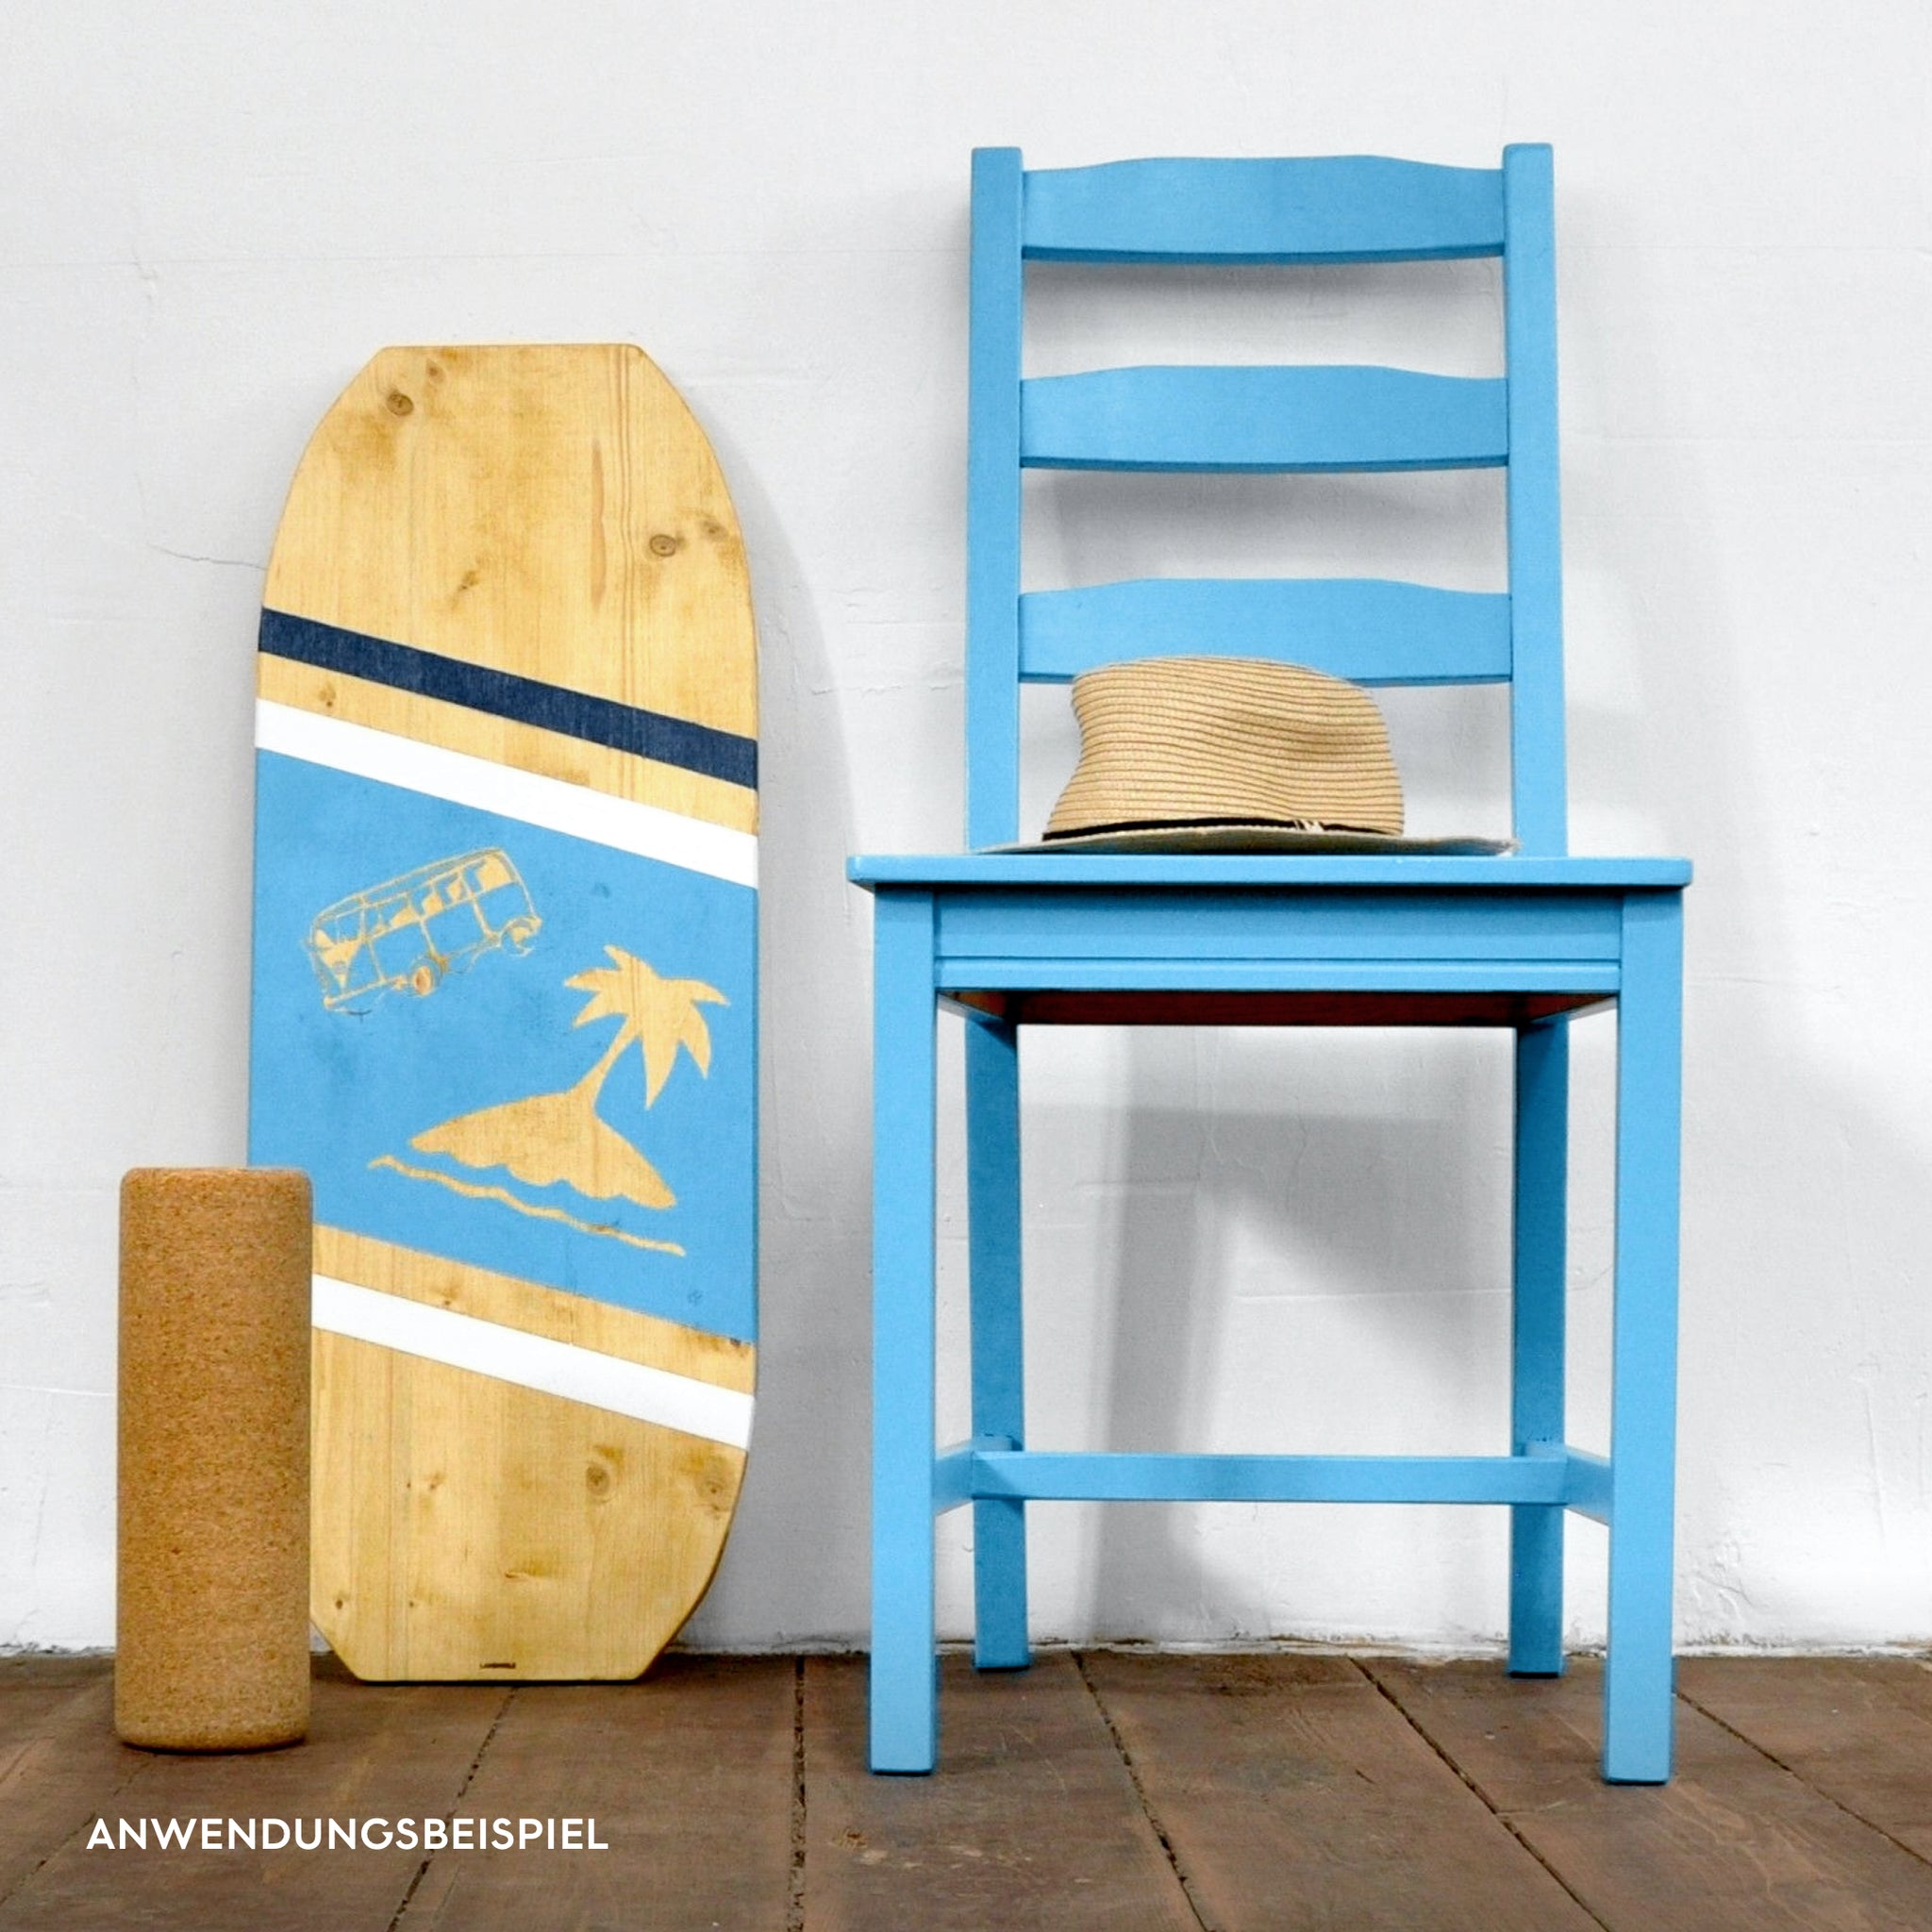 Anwendungsbeispiel blauer Lack für Möbel Upcycling auf Balanceboard mit Schablone und Stuhl.